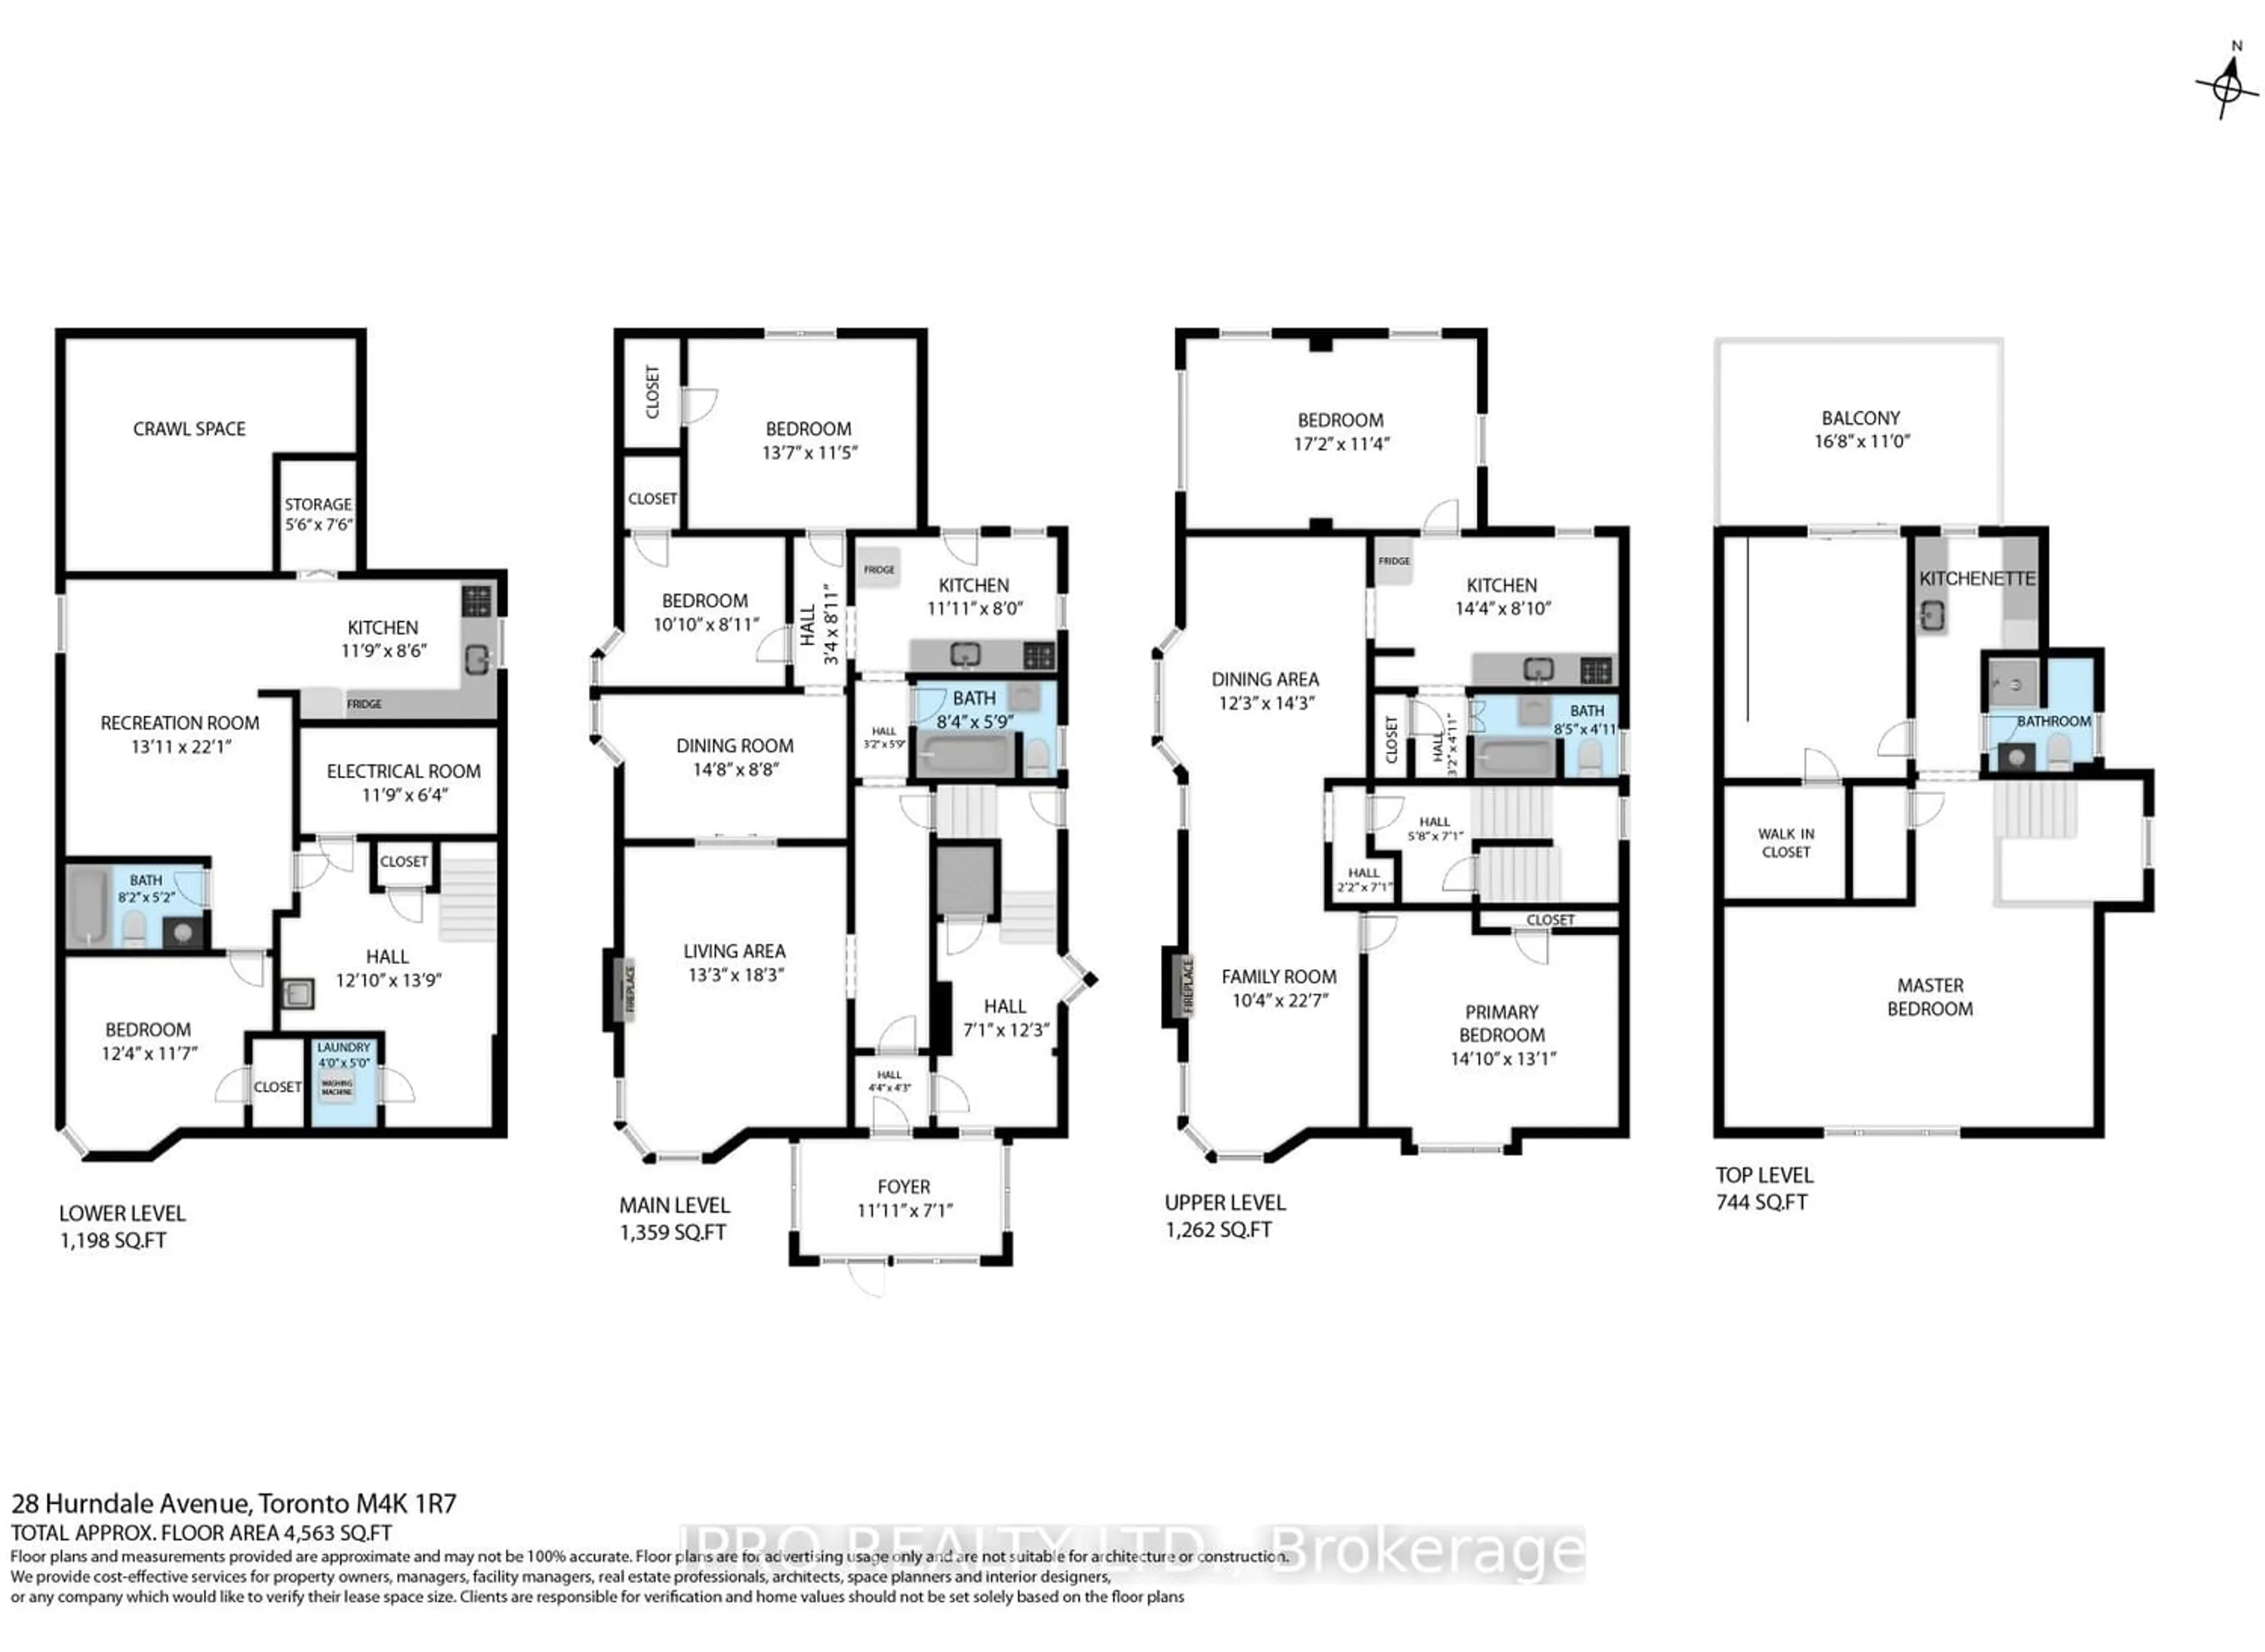 Floor plan for 28 Hurndale Ave, Toronto Ontario M4K 1R7